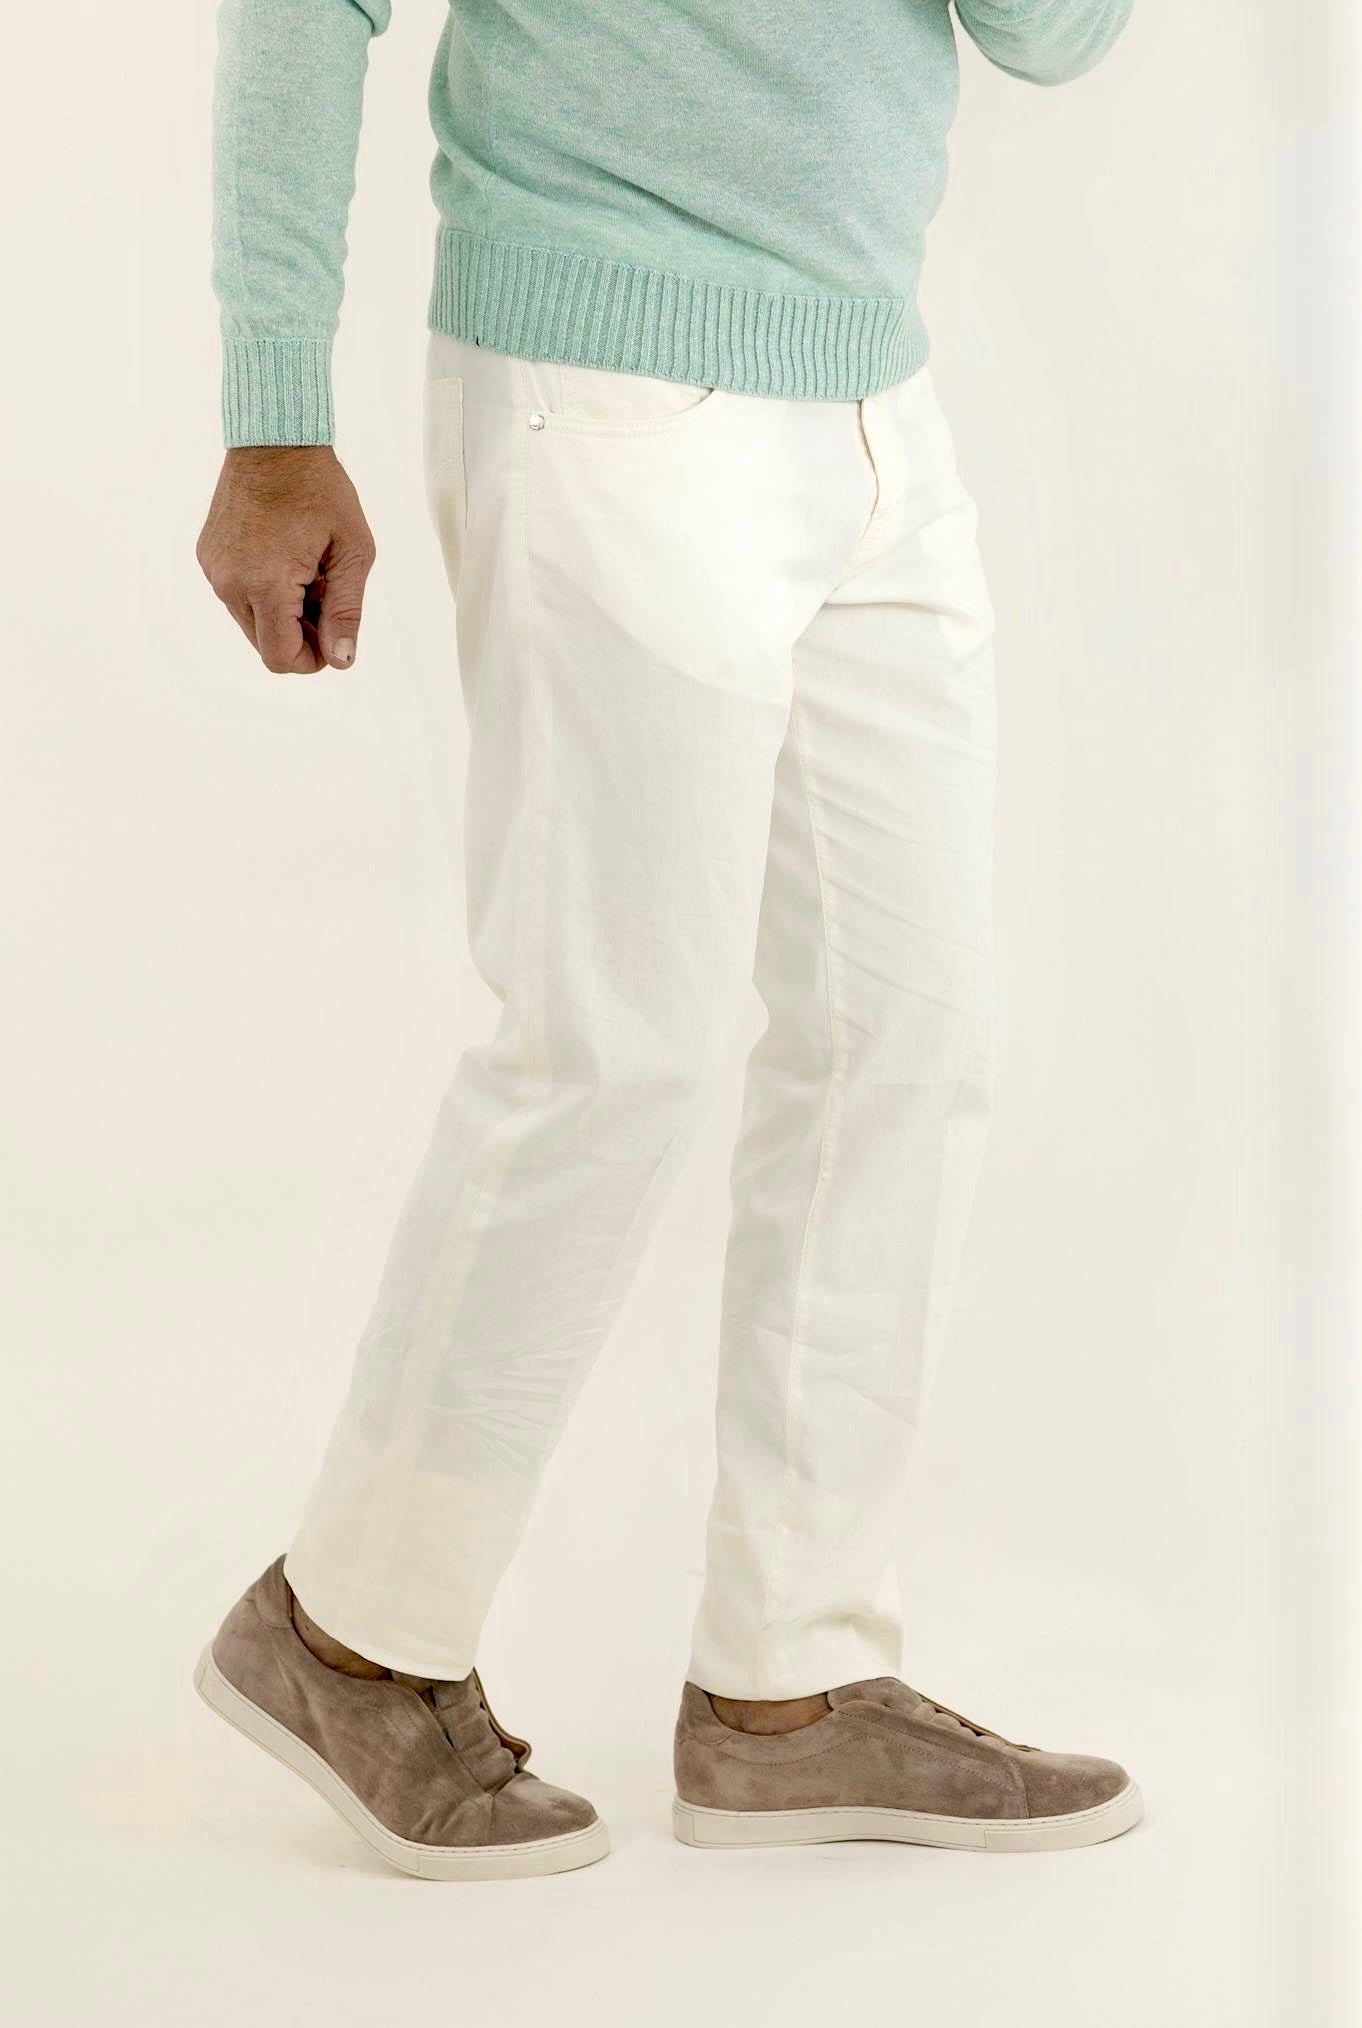 PESCAROLO 5 Pocket Trousers mod. Black Cotton Silk White